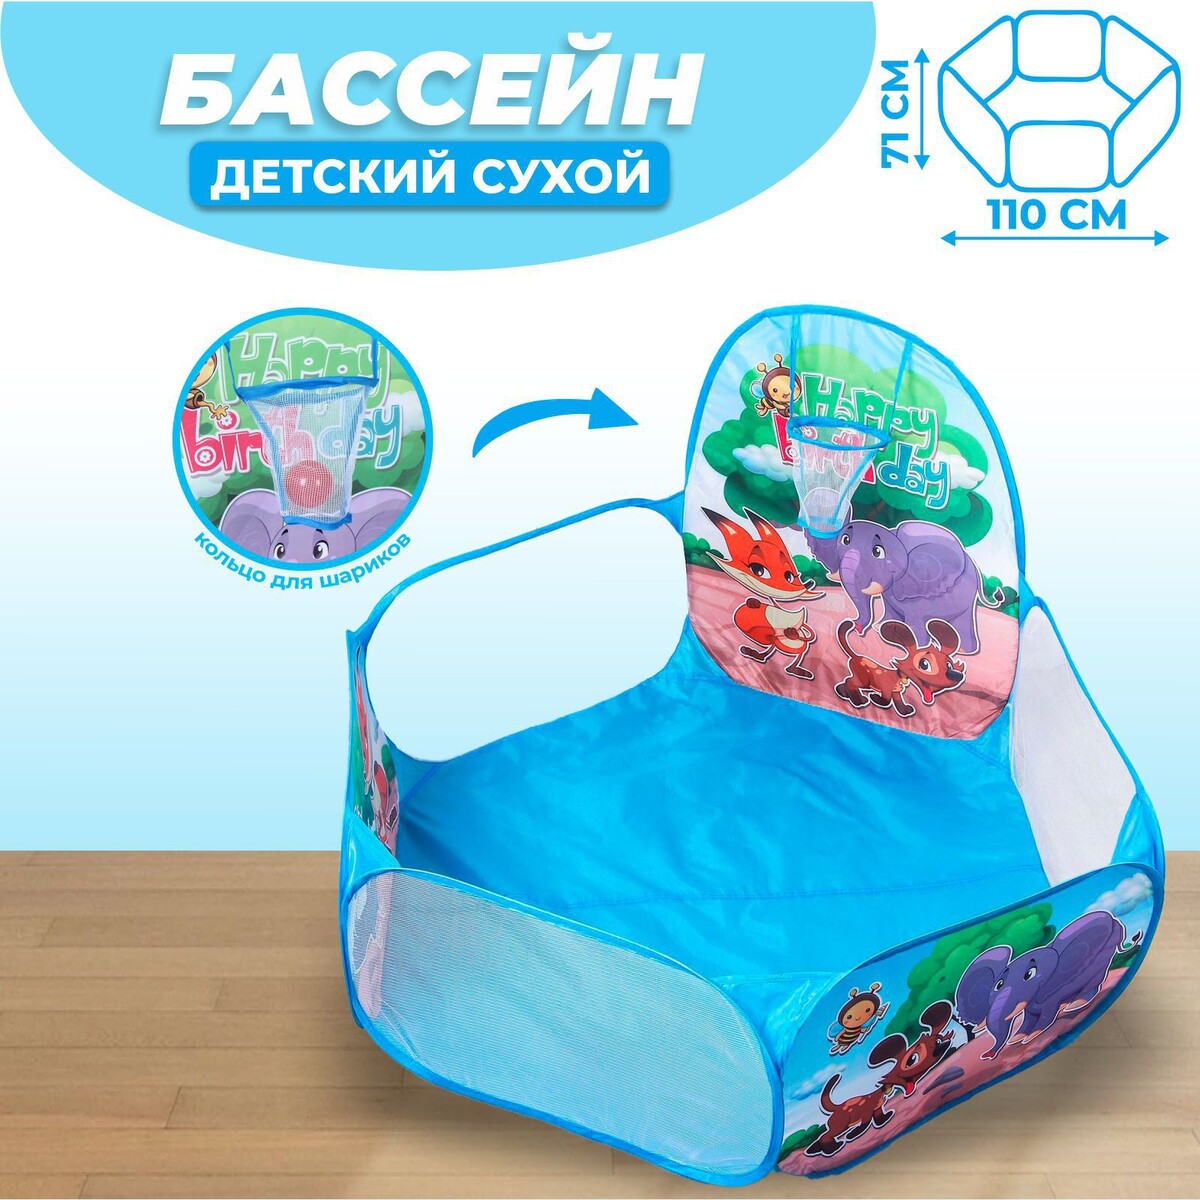 Палатка детская игровая - сухой бассейн для шариков бассейн сухой с туннелем и шарами 100шт